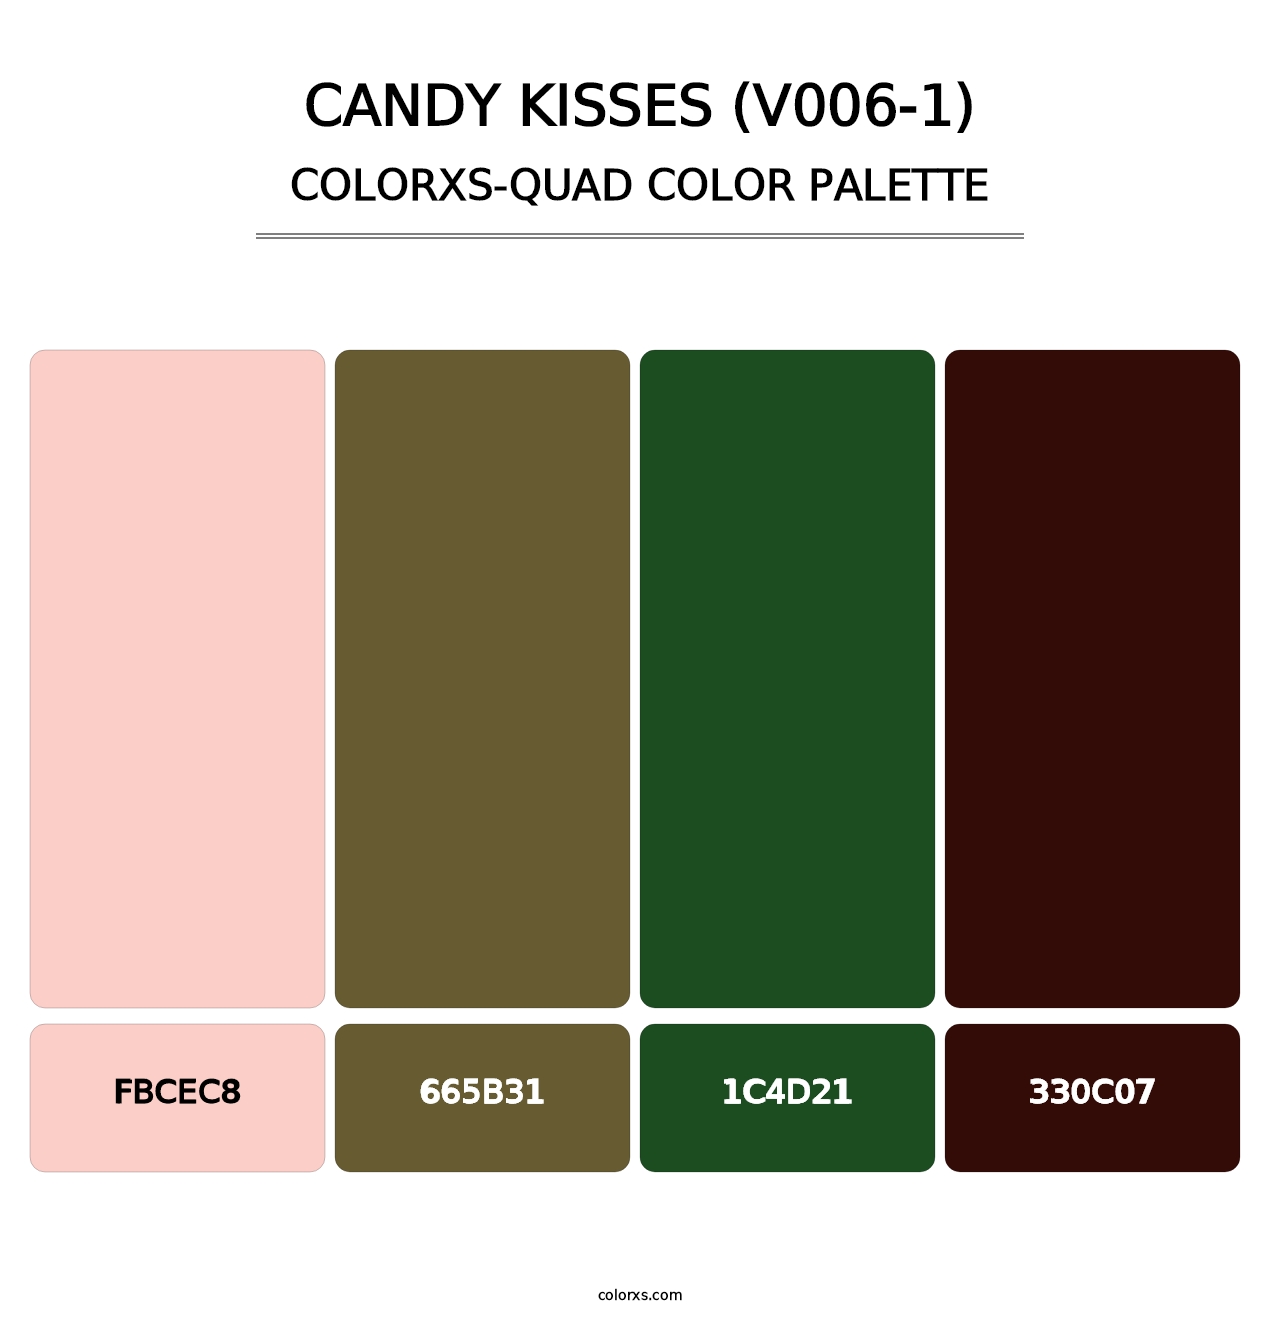 Candy Kisses (V006-1) - Colorxs Quad Palette